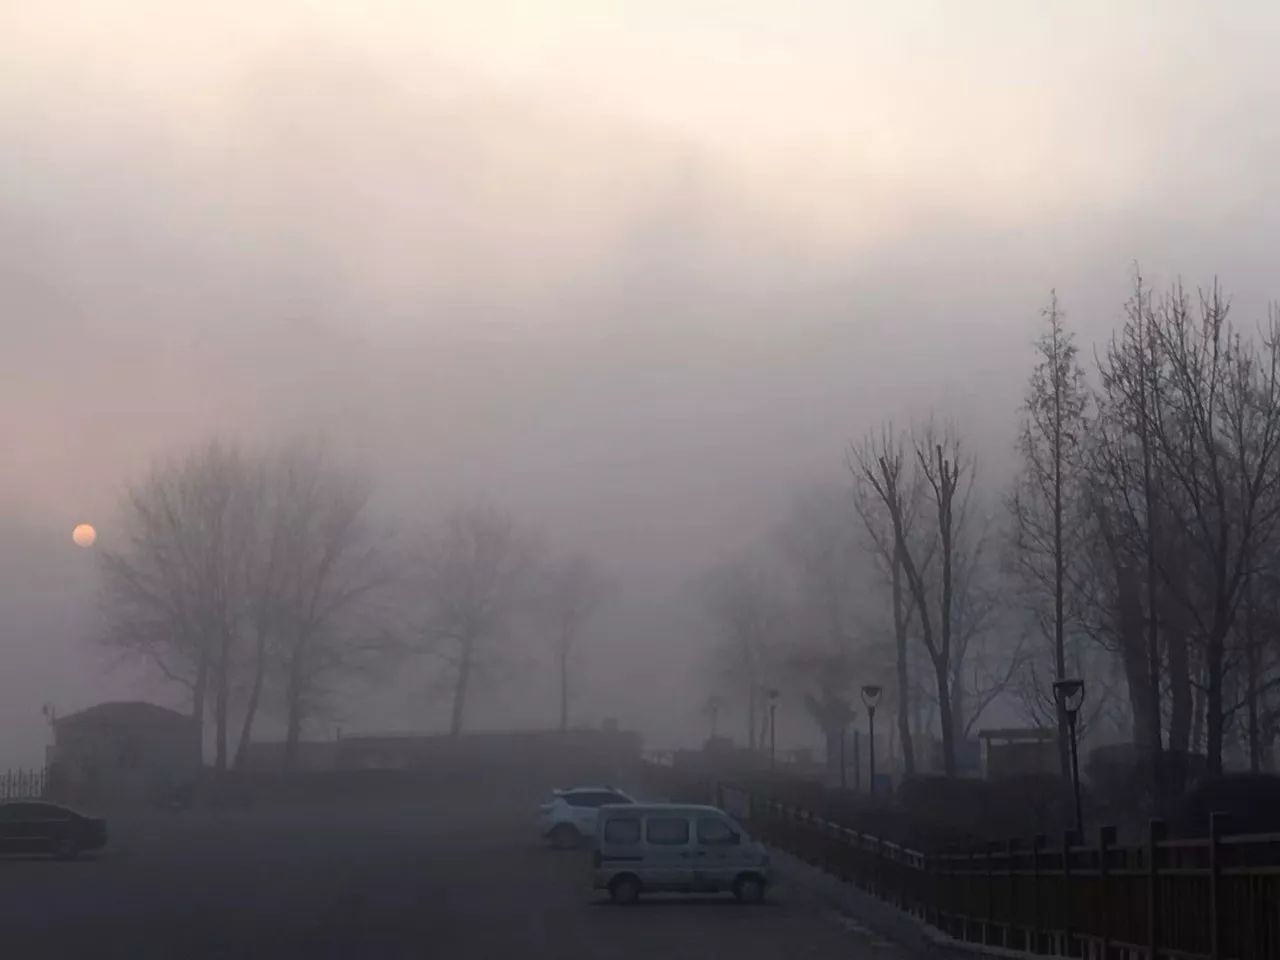 【丹东天气:大雾弥漫 高速封闭 暗冰路滑 谨慎行车 何以解围 唯有冷